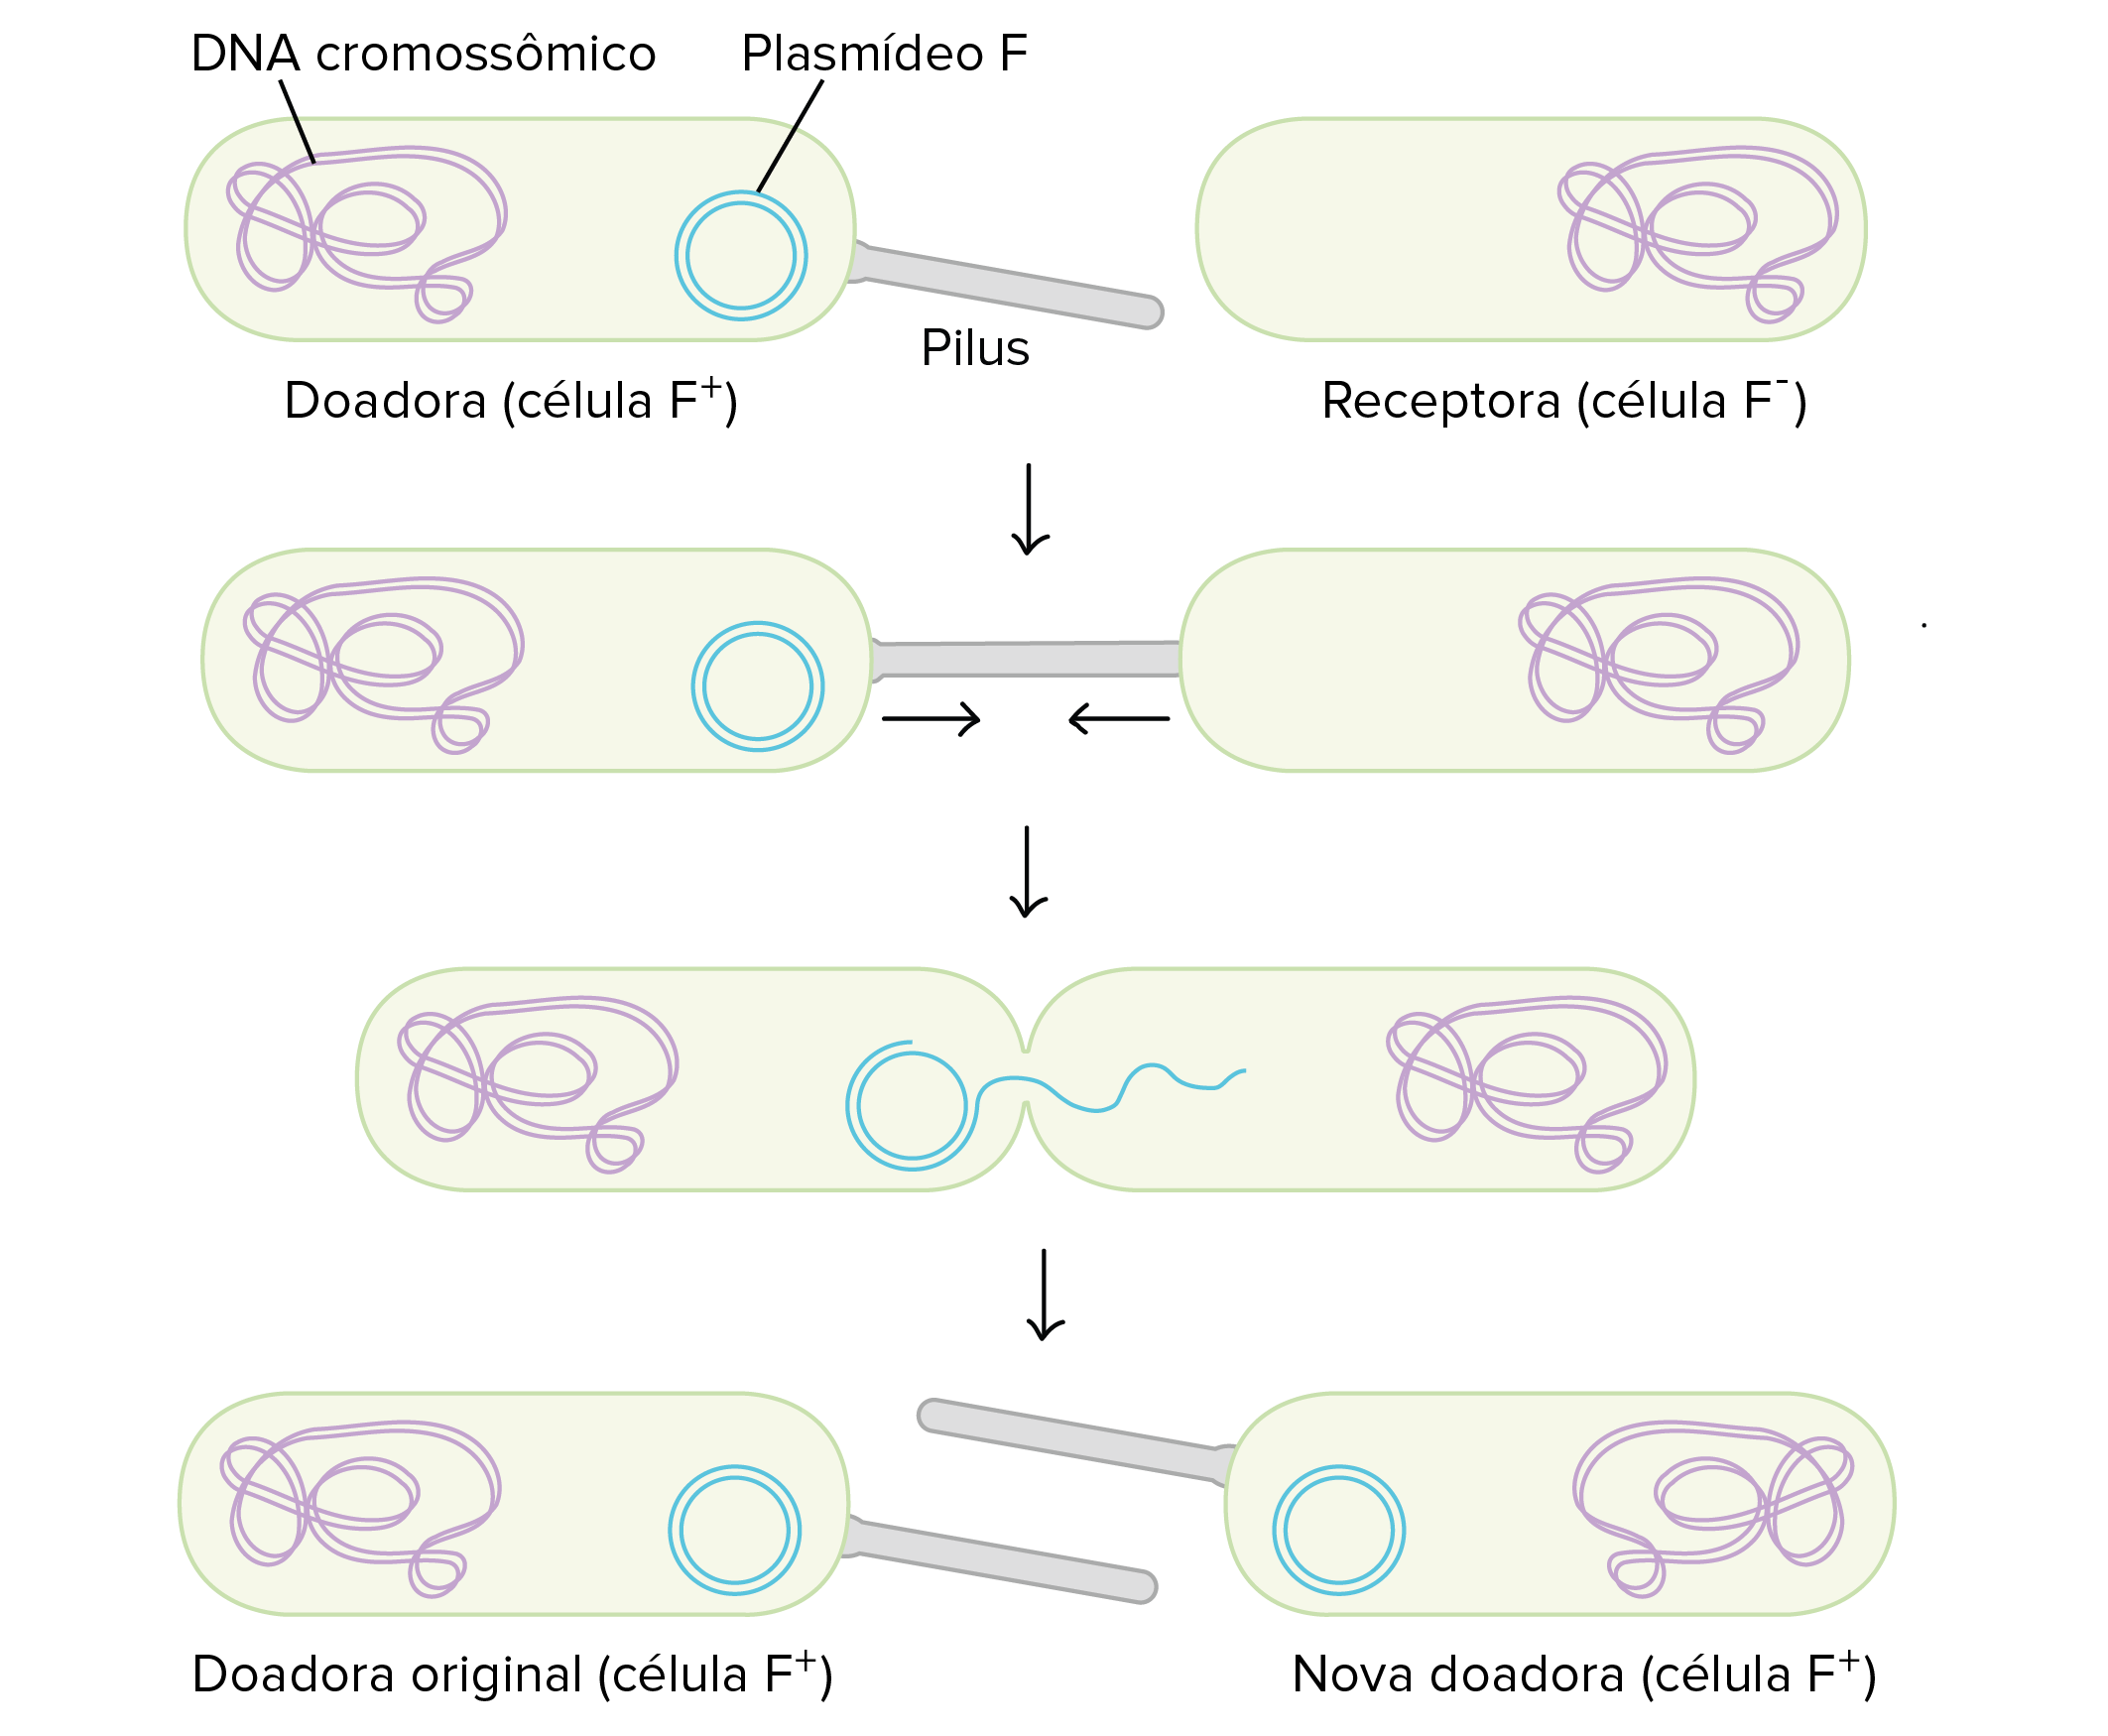 1. Uma célula doadora F+ contém DNA cromossomal e um plasmídio F.  Ele também contém um pilus em forma de bastonete. A célula receptora F- tem apenas DNA cromossomal e não possui plasmídeo F.

2. A célula doadora usa seu pilus para se ligar à célula receptora, e as duas células se aproximam. 

3. Um canal se forma entre o citoplasma das duas células, e uma única fita do plasmídio F passa por ele. 

4. Agora ambas as células possuem um plasmídio F e são F+. O receptor se torna um doador e pode formar um pilus. 